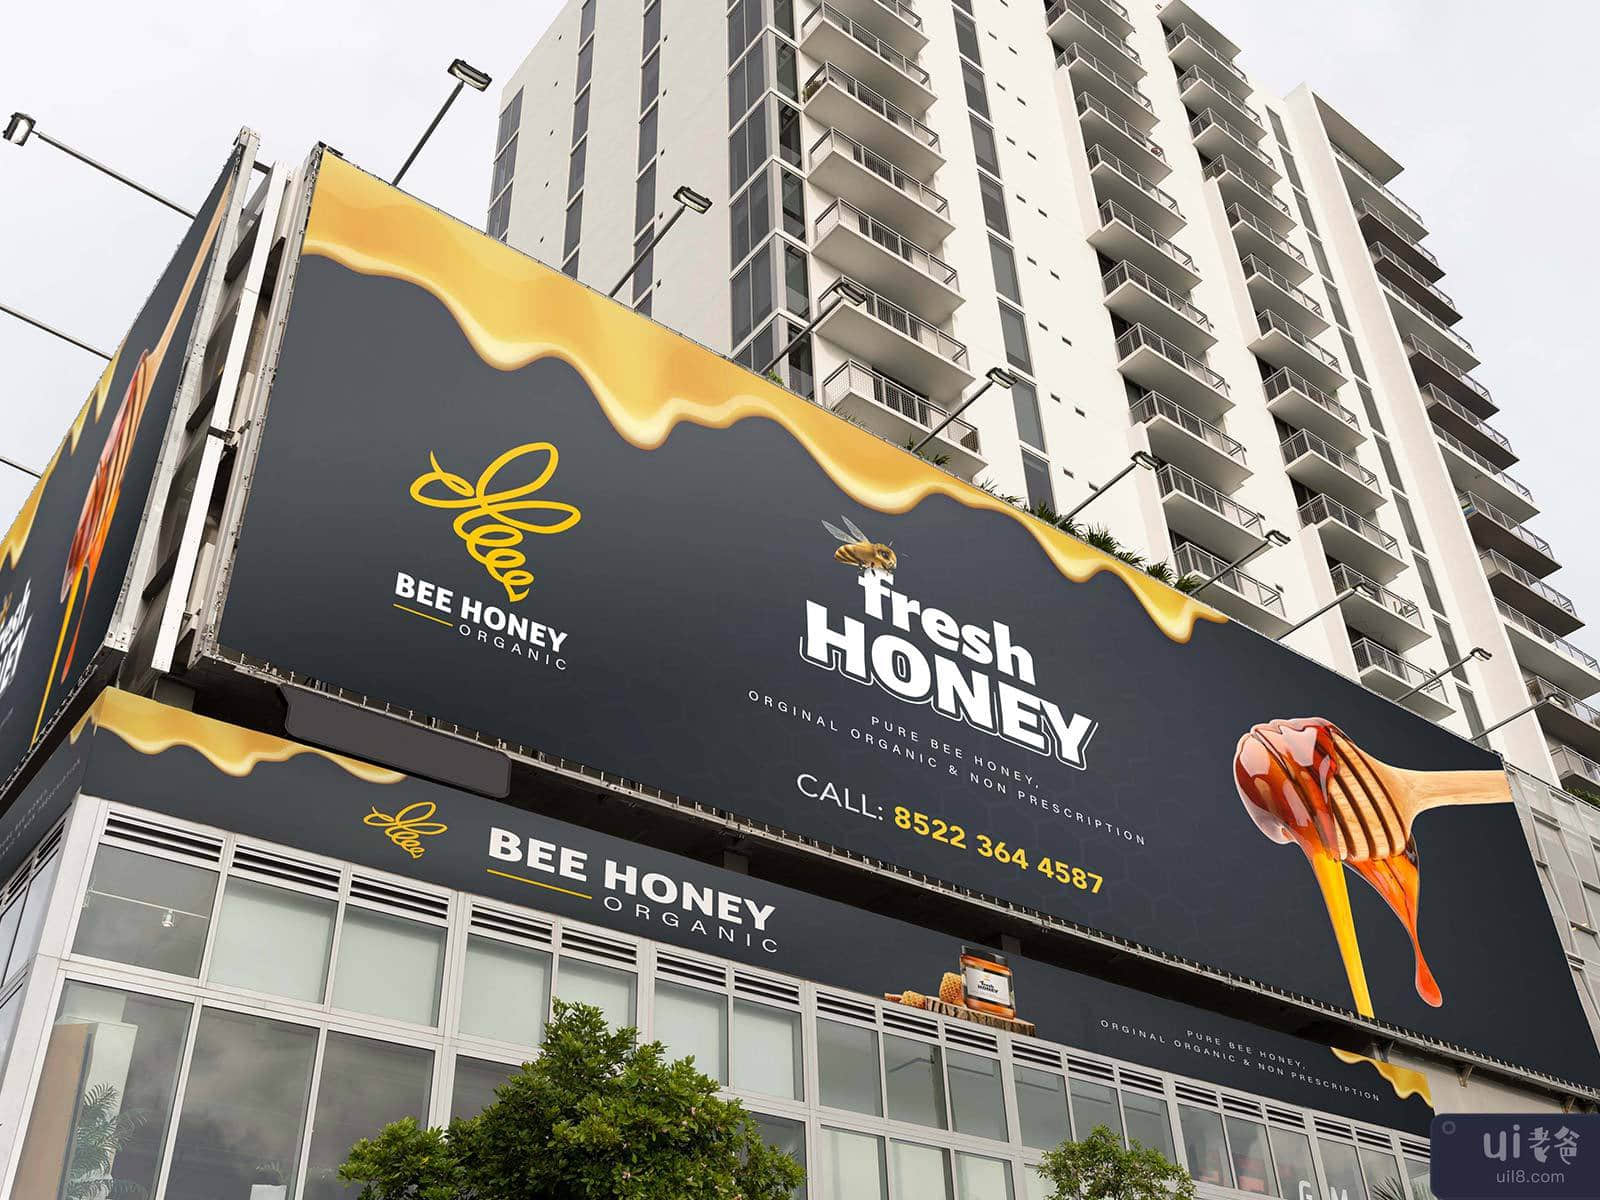 蜜蜂蜂蜜有机品牌宣传 ✨(Bee Honey🍯 Organic Branding Shot✨)插图7